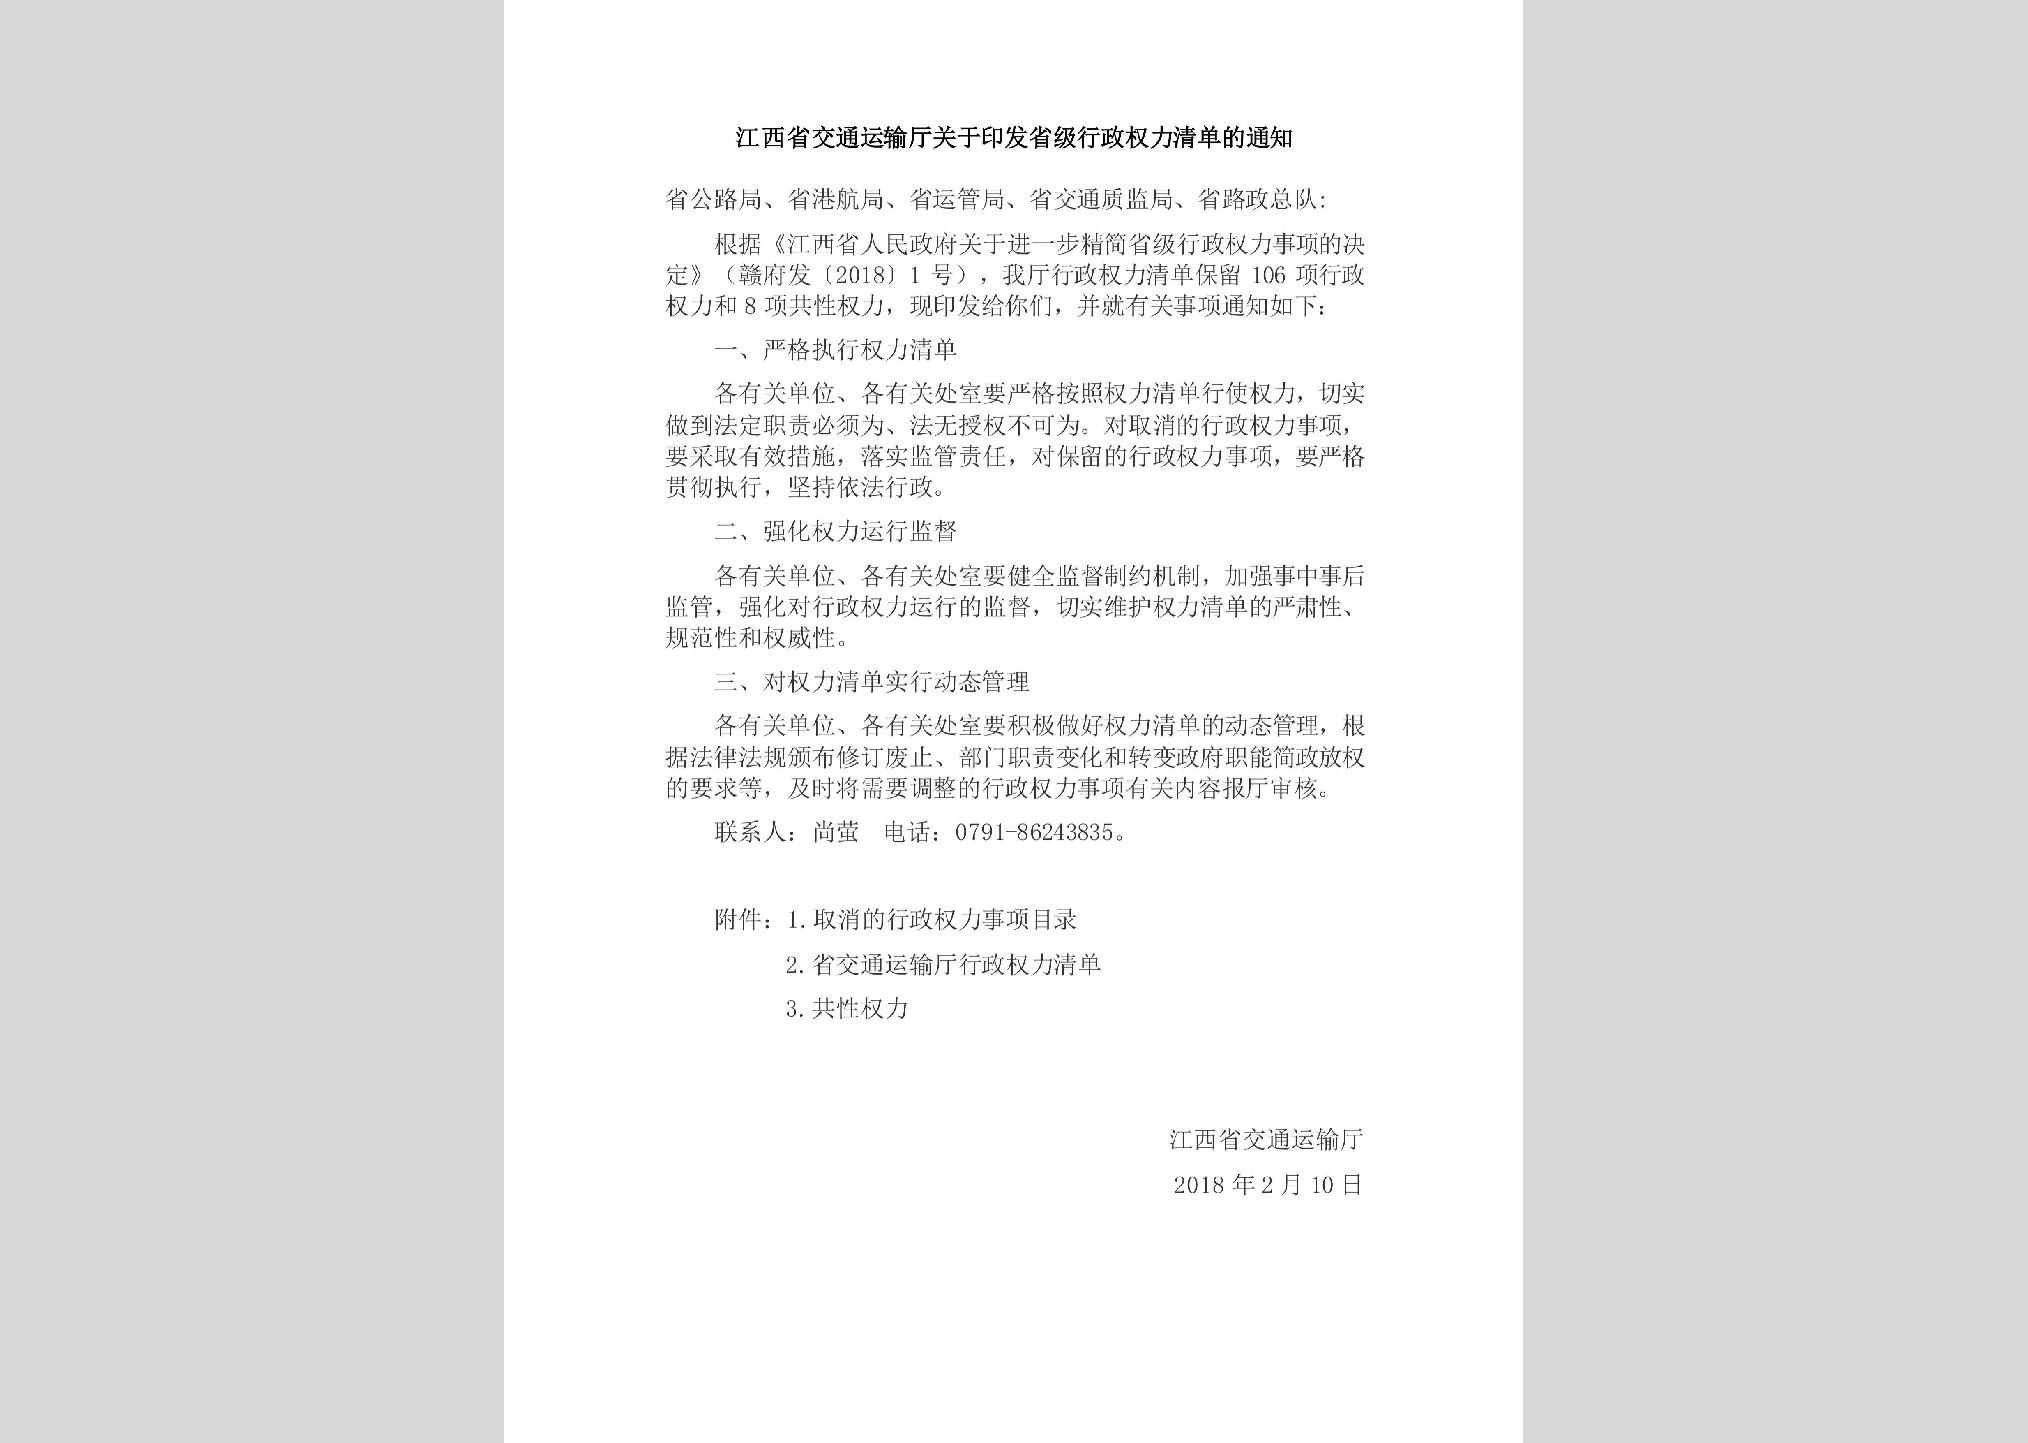 JX-XZQLQDDT-2018：江西省交通运输厅关于印发省级行政权力清单的通知